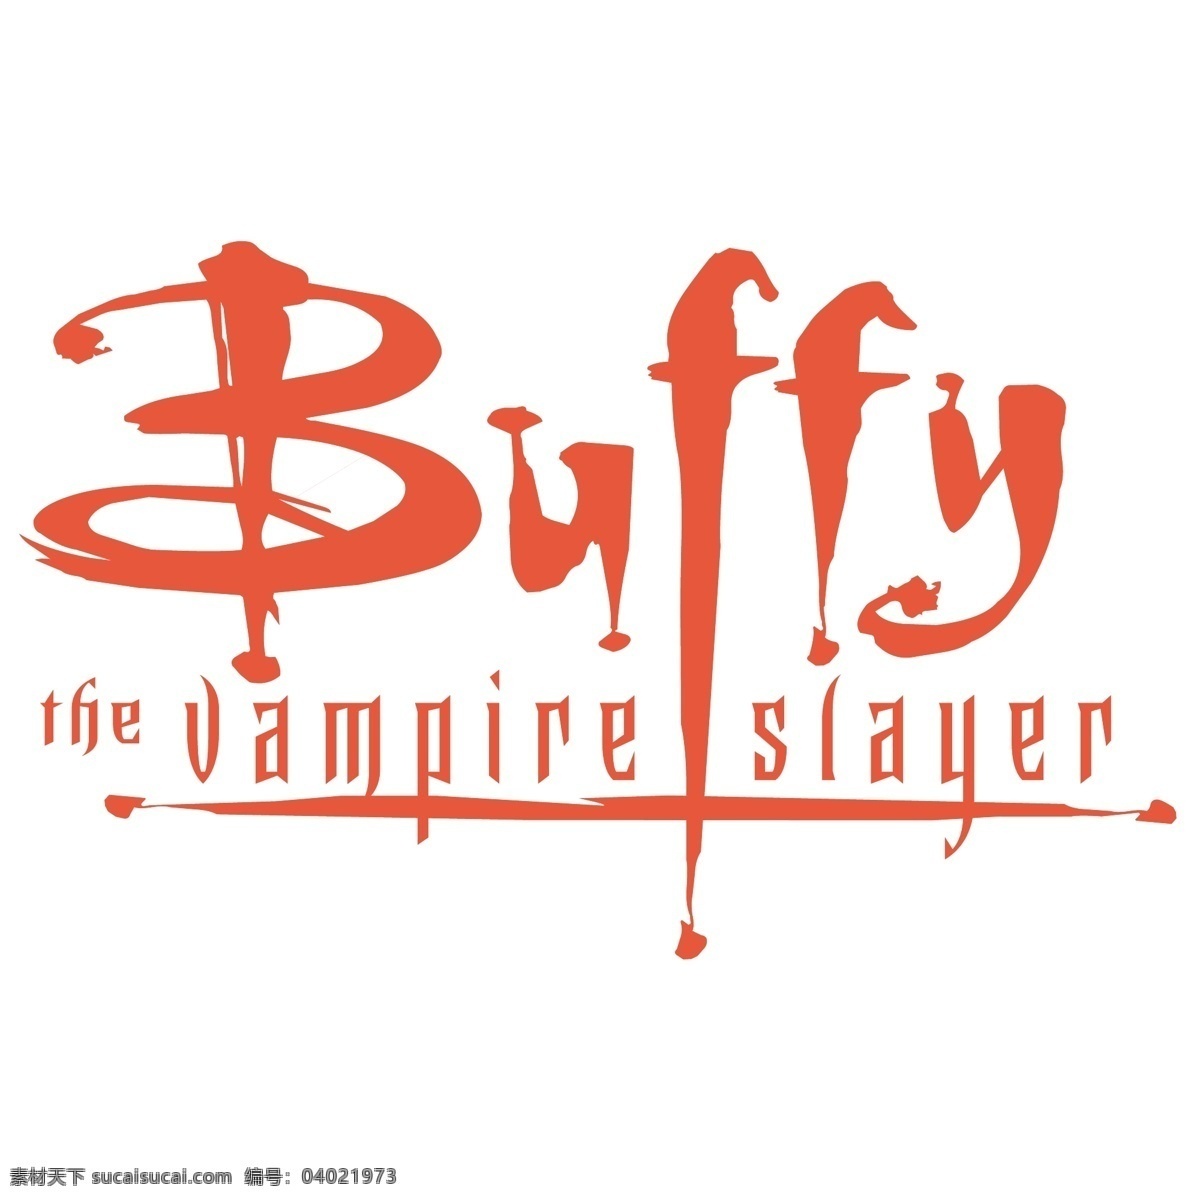 吸血鬼 猎人 巴菲 免费 标志 psd源文件 logo设计